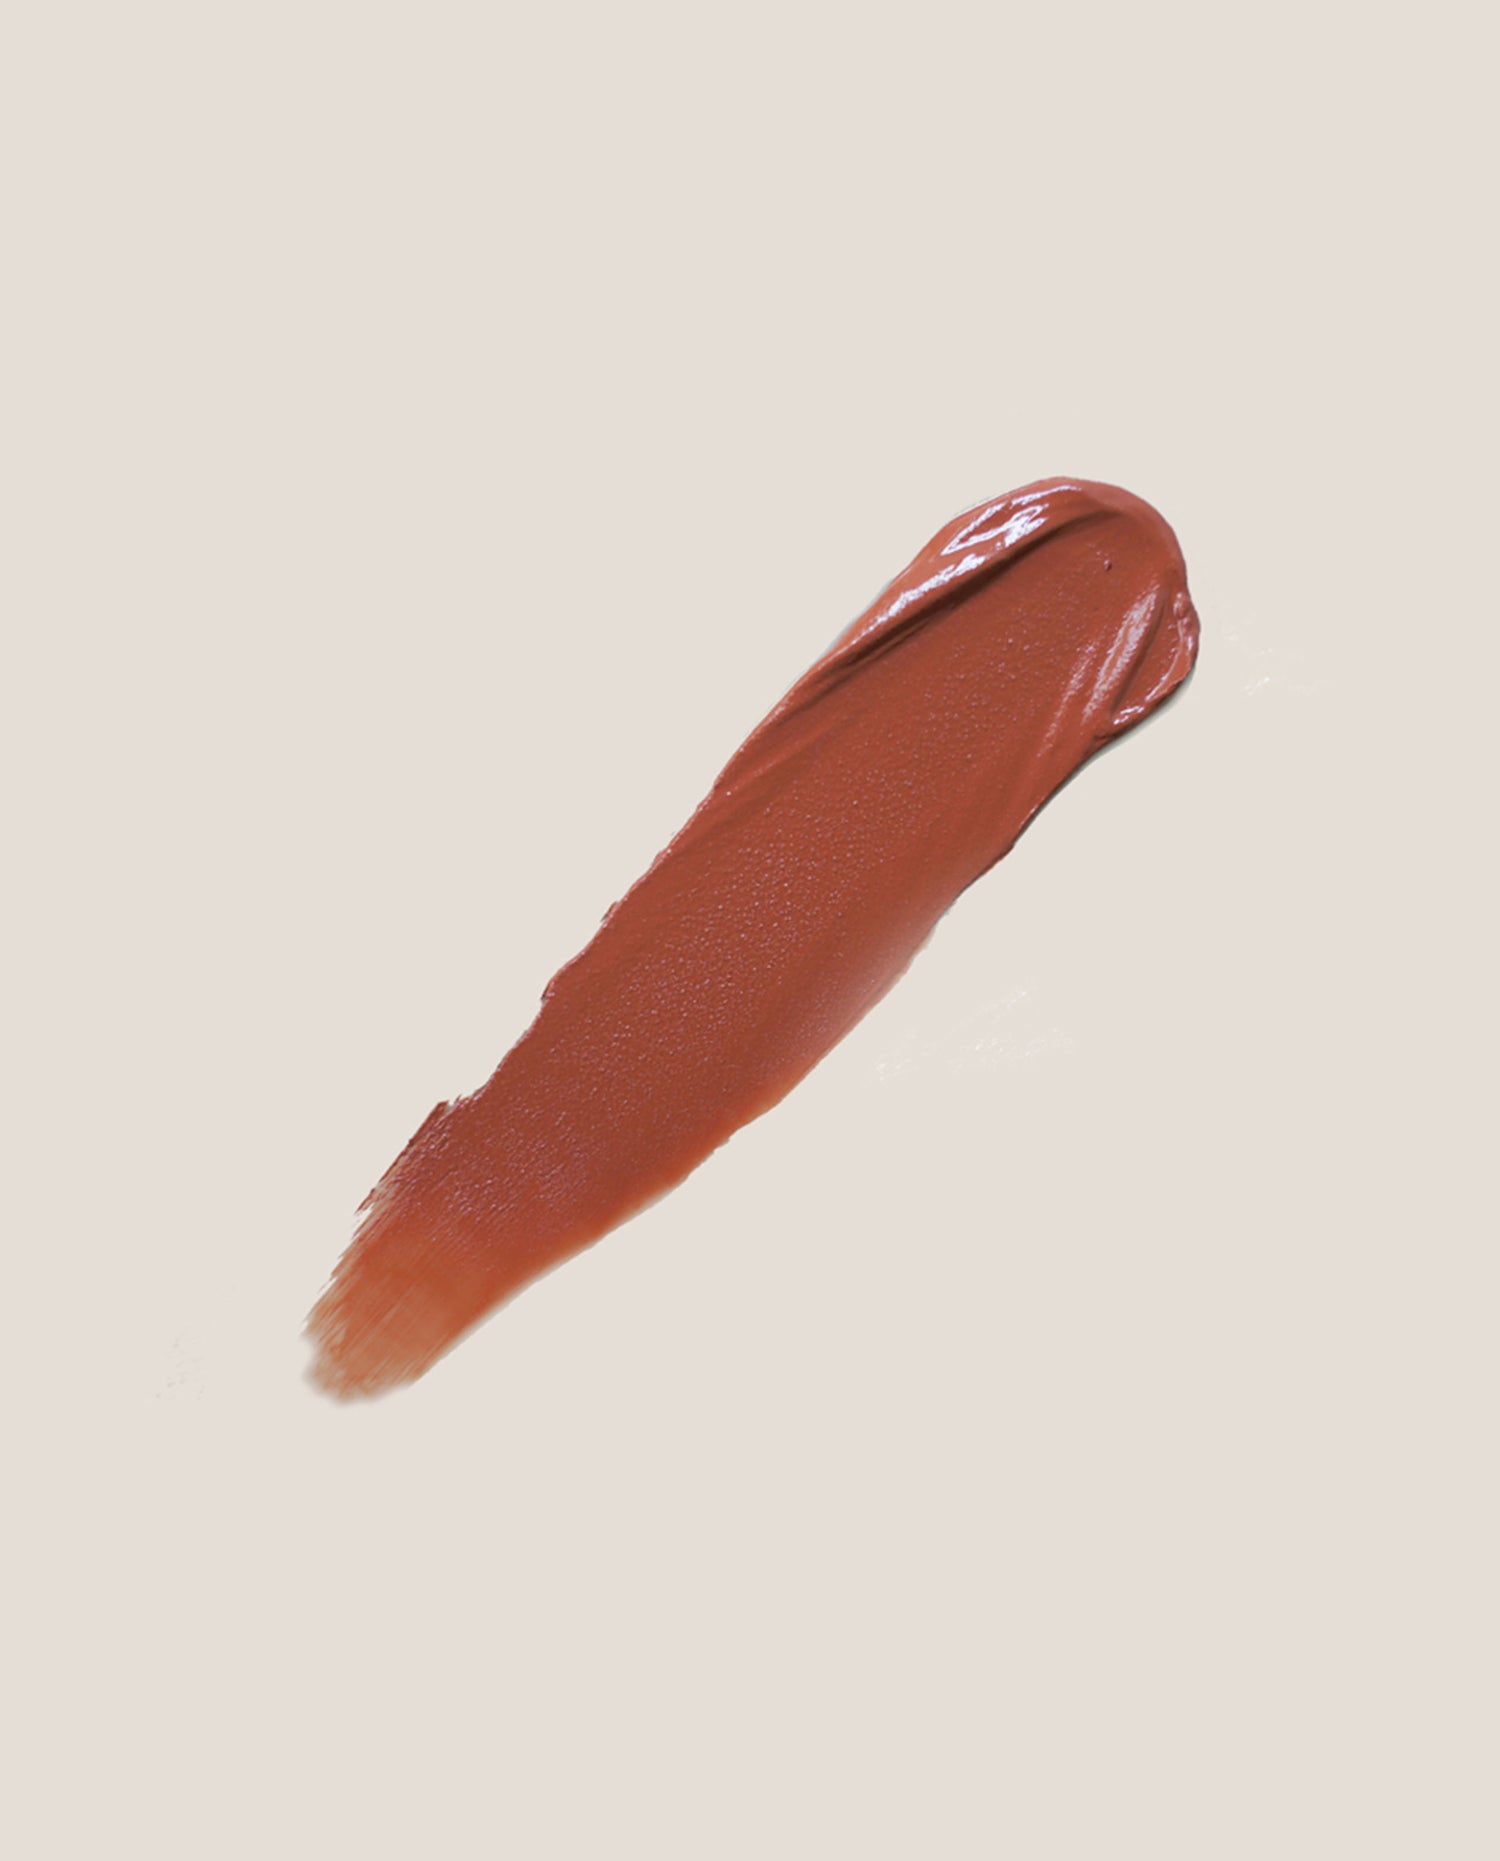 marché commun eclo maquillage beauté clean naturel zéro-déchet rouge à lèvres brique date